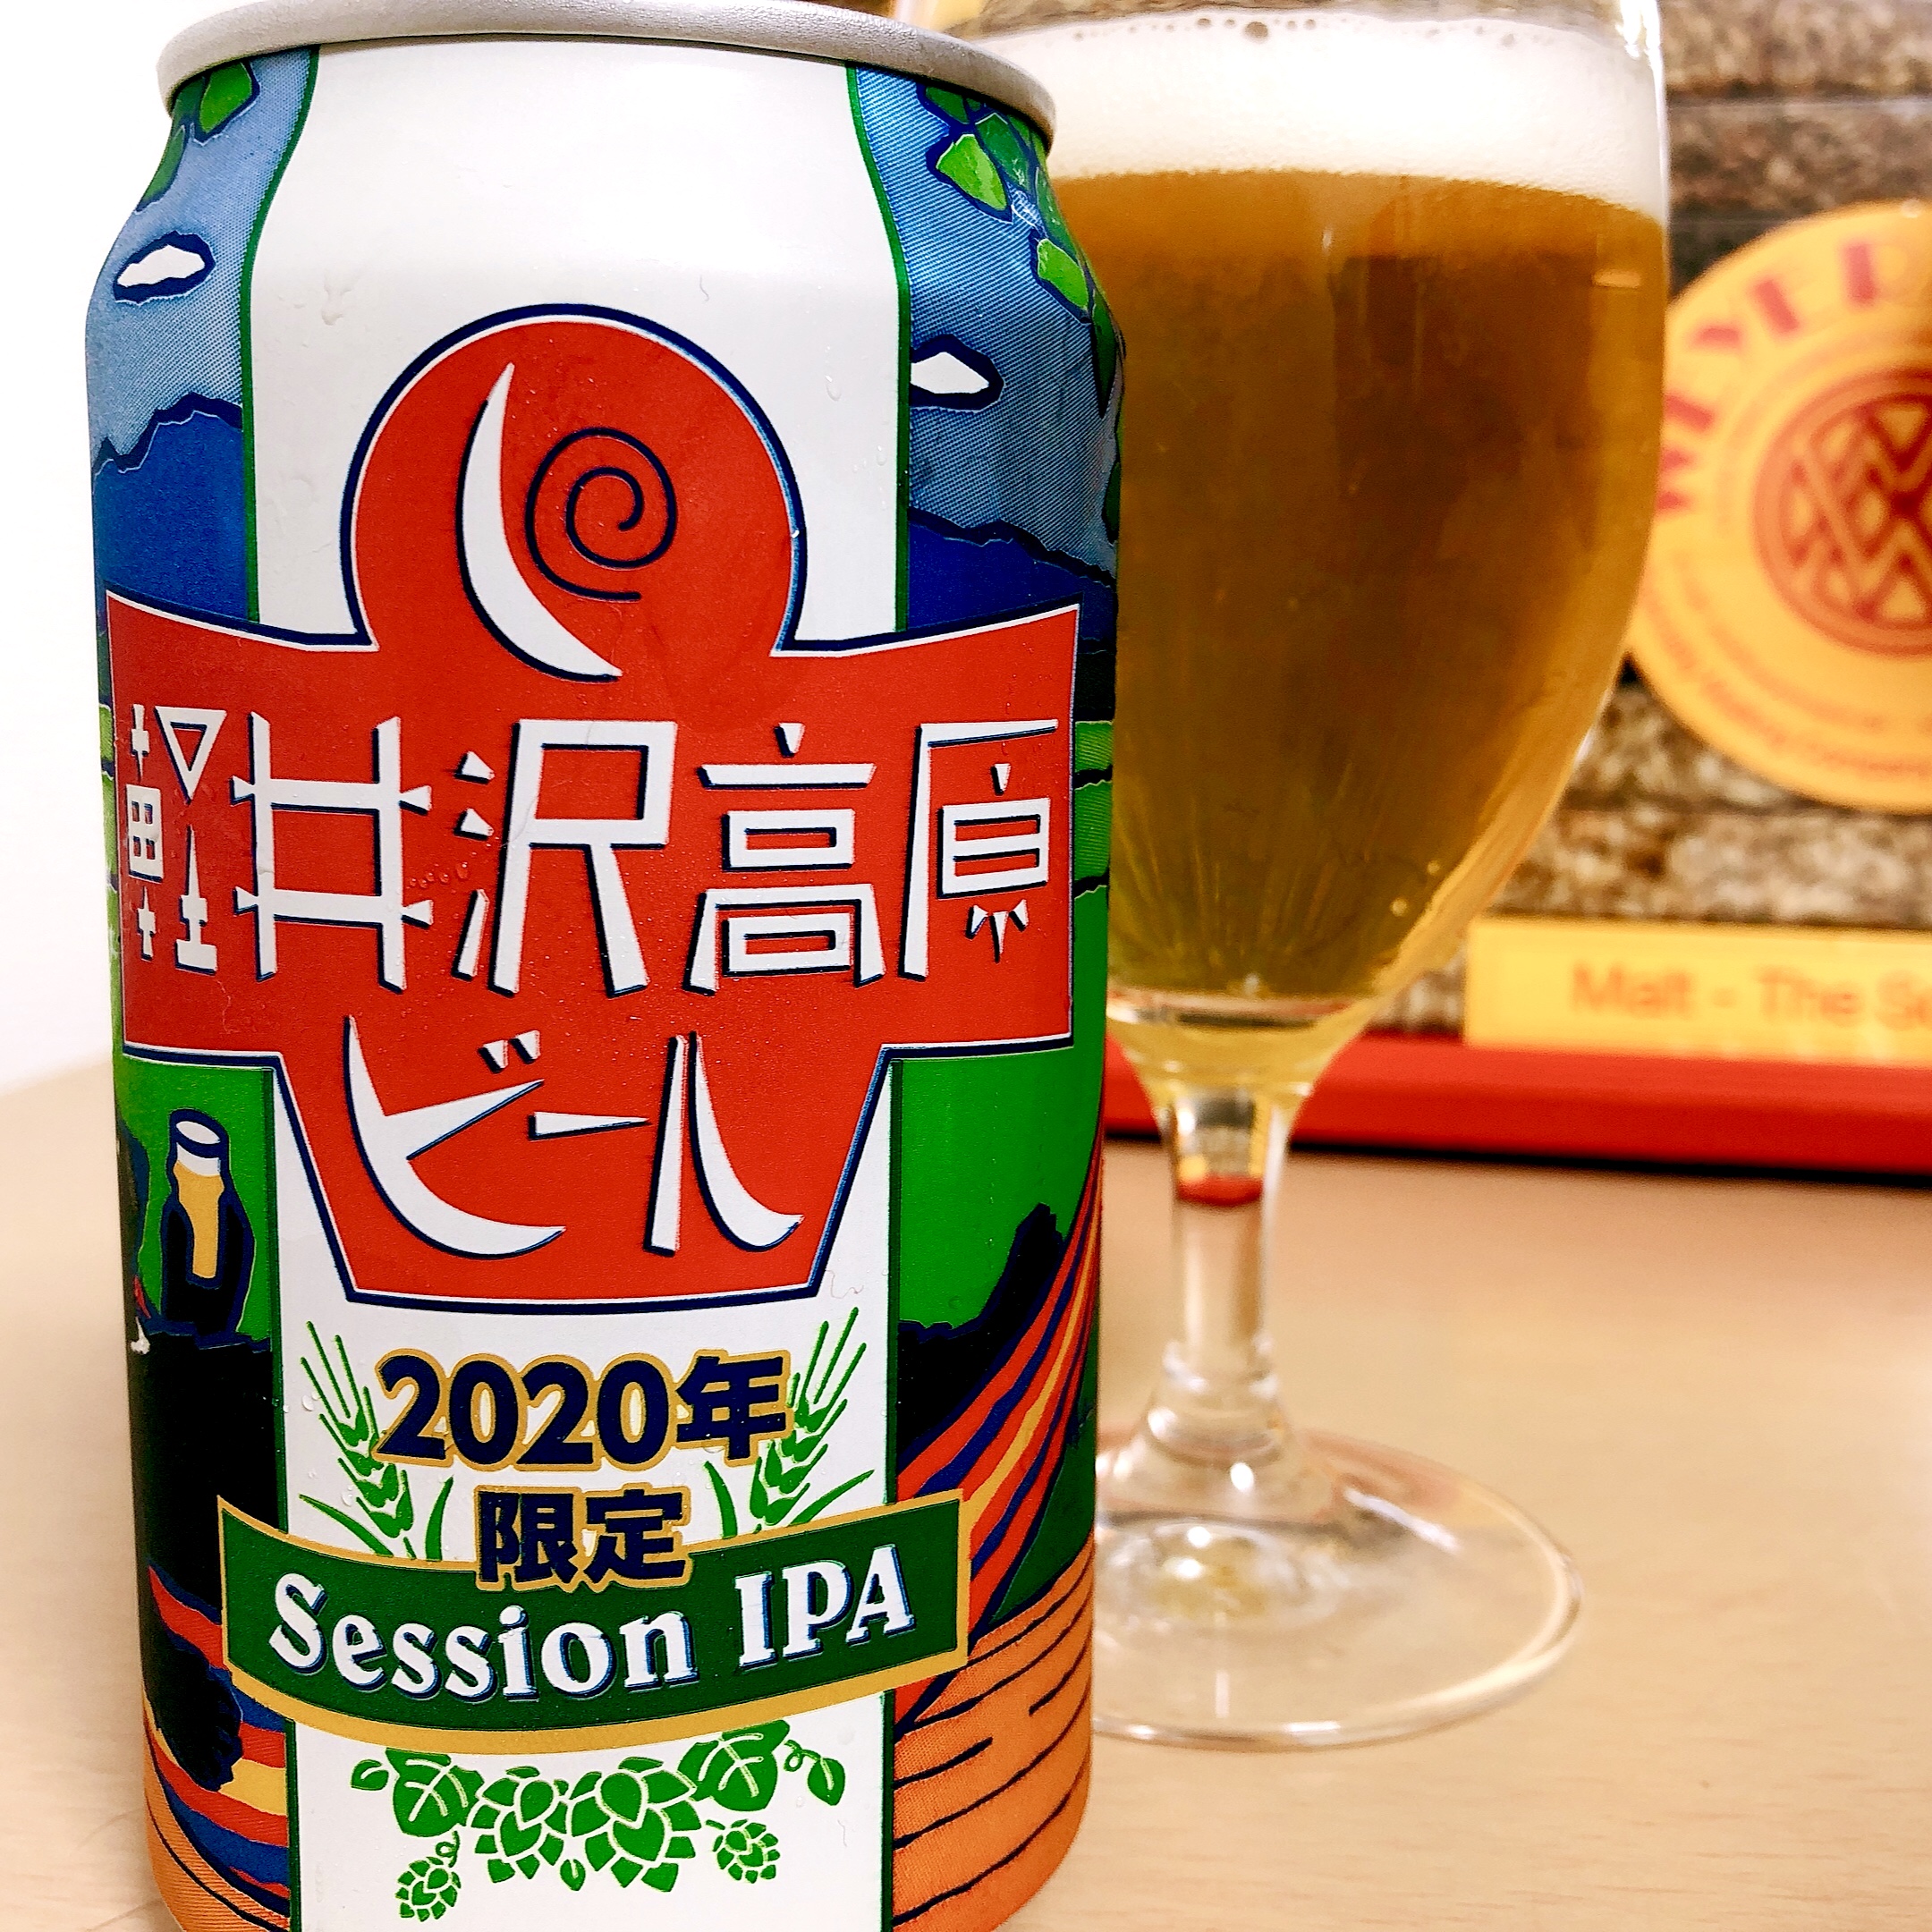 コンビニペアリング 軽井沢高原ビール Session Ipa を飲むなら サバオリーブ缶 を合わせましょう 日本ビアジャーナリスト協会